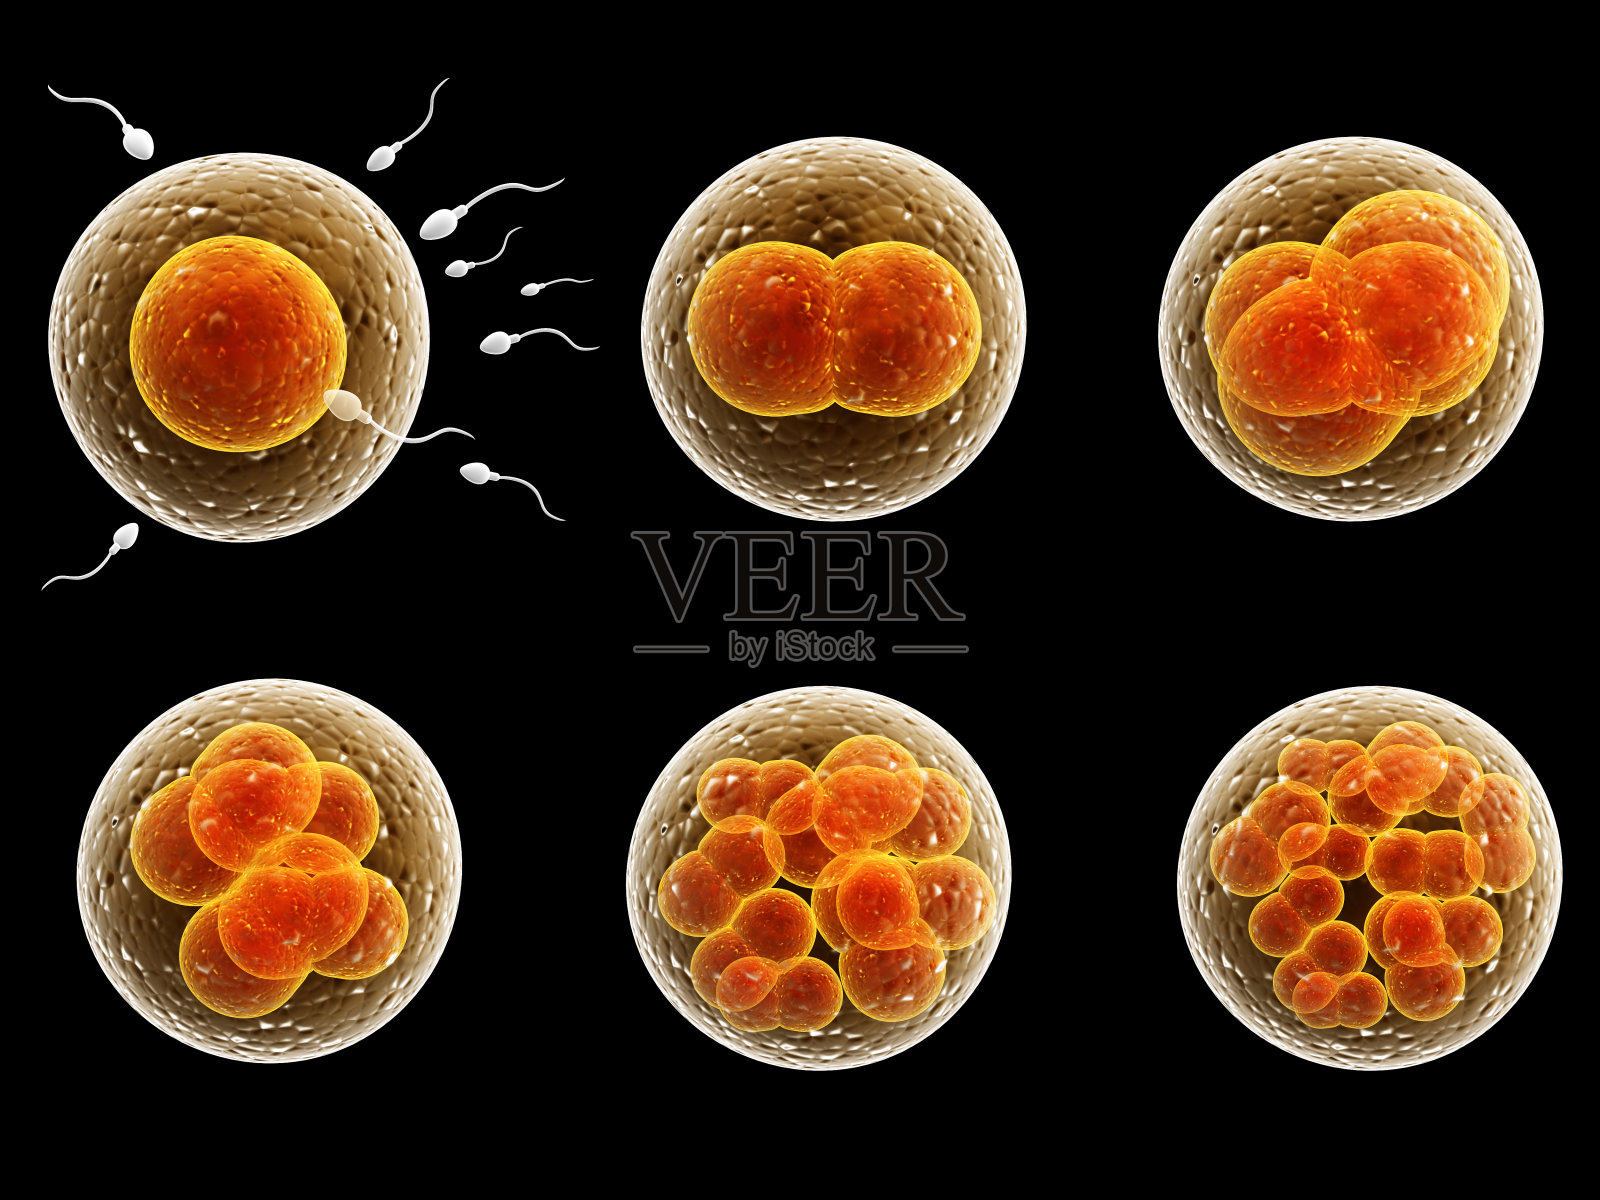 受精细胞的分裂过程照片摄影图片